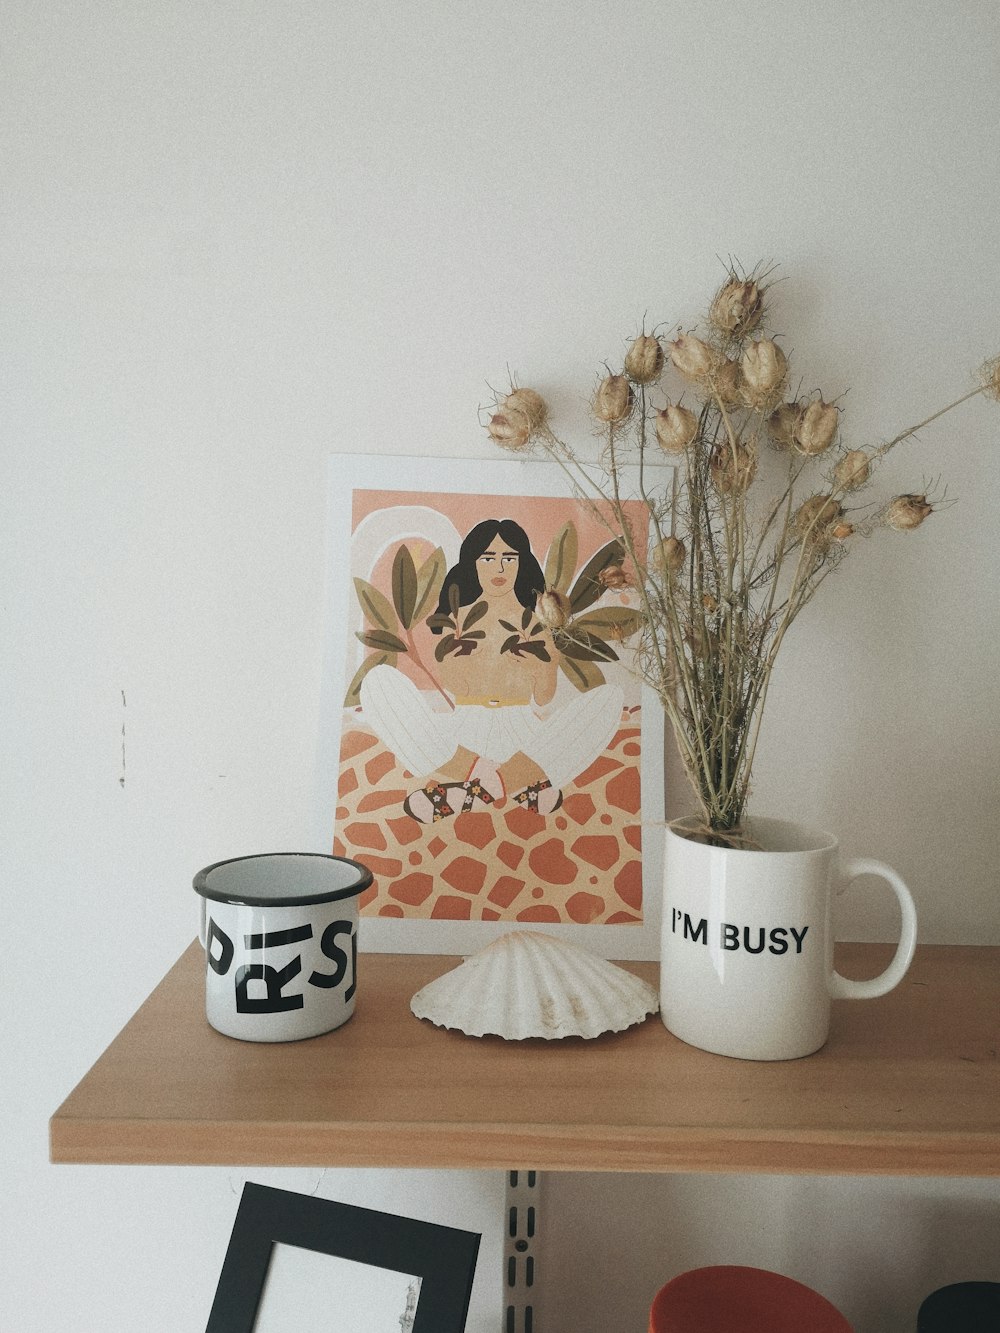 Una foto di una donna e una tazza di caffè su uno scaffale